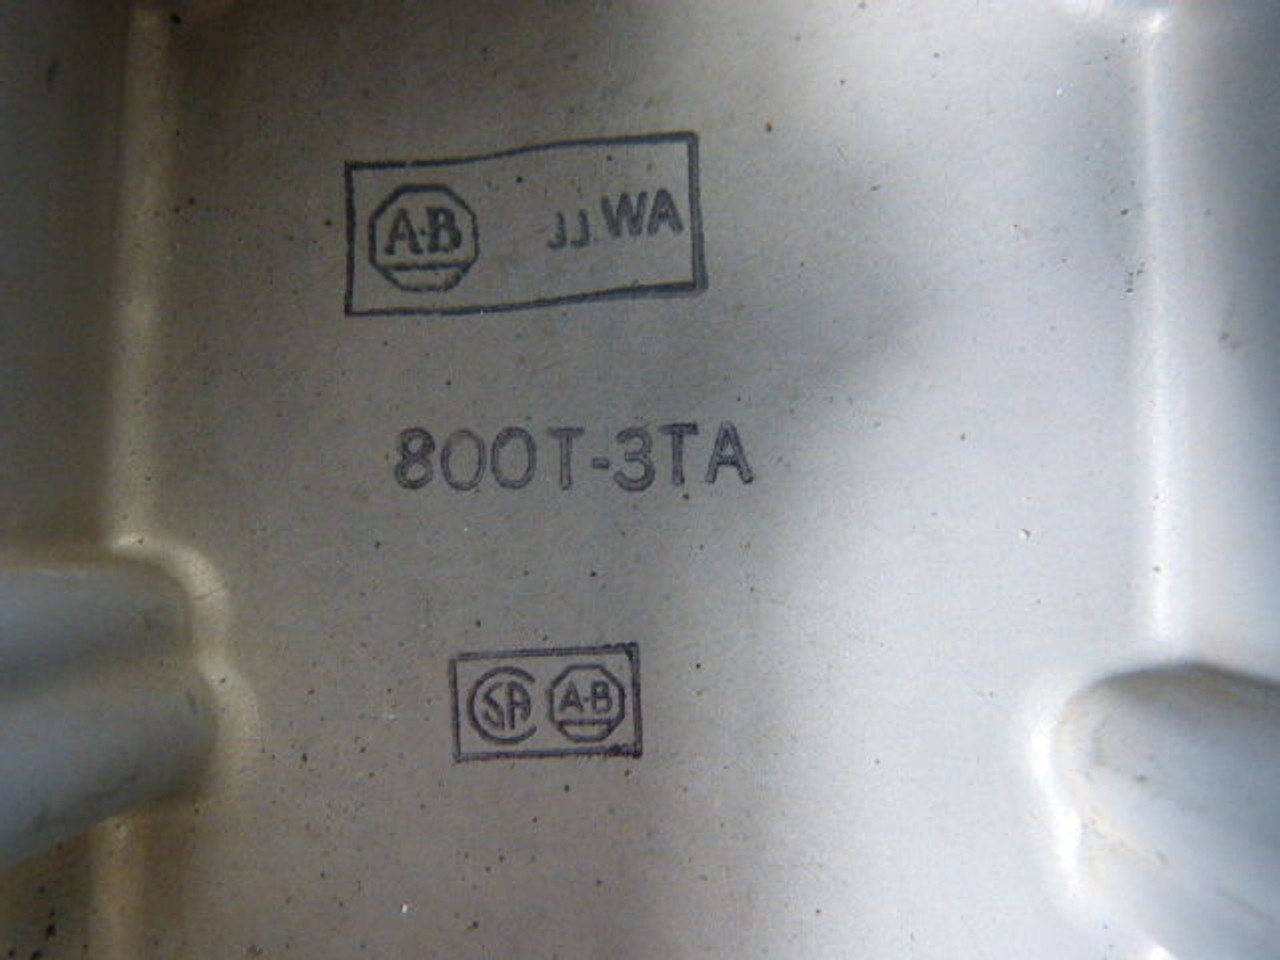 Fanuc A860-0202-T001 Enclosed Pulse Generator in Allen-Bradley 800T-3TA USED